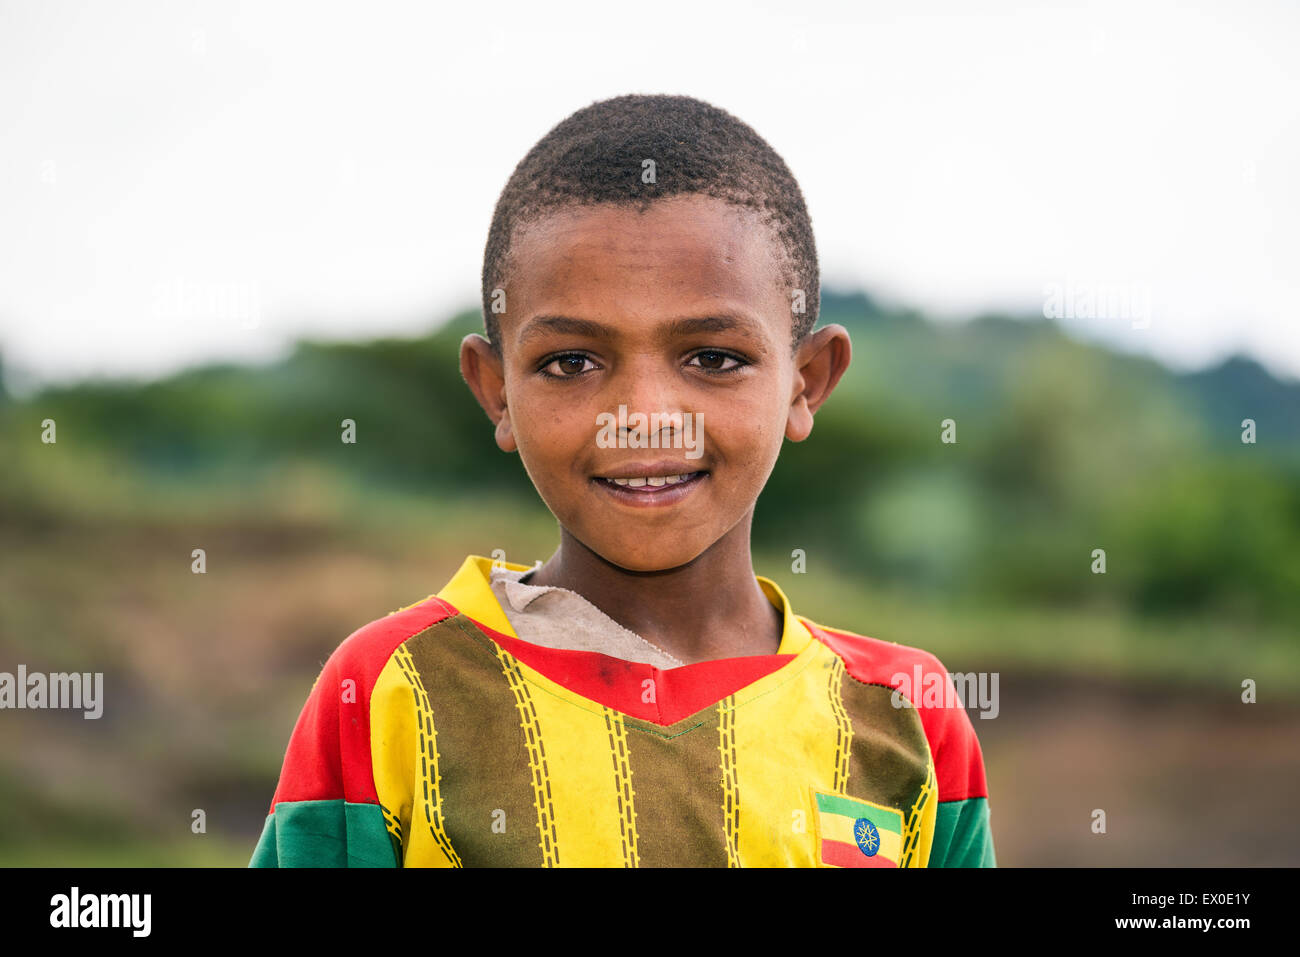 Young ethiopian boy Stock Photo